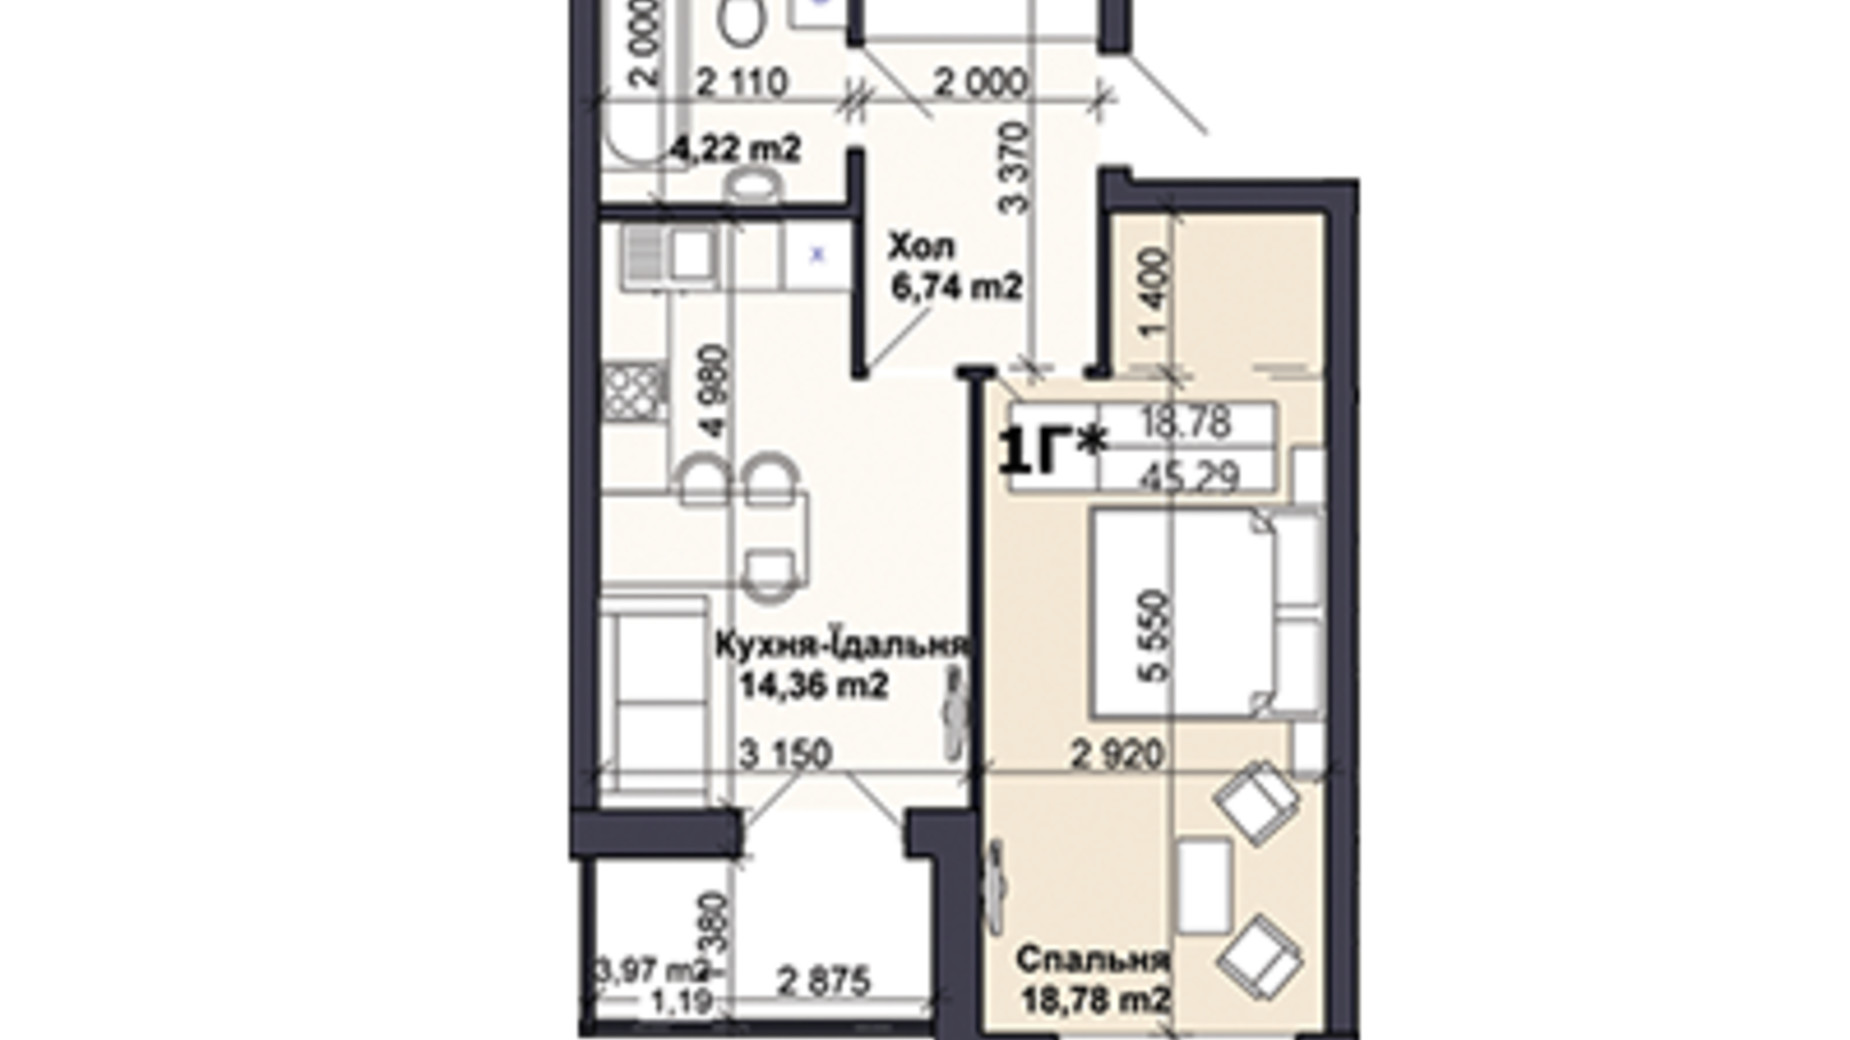 Планування 1-кімнатної квартири в ЖК Саме той 45.29 м², фото 585423